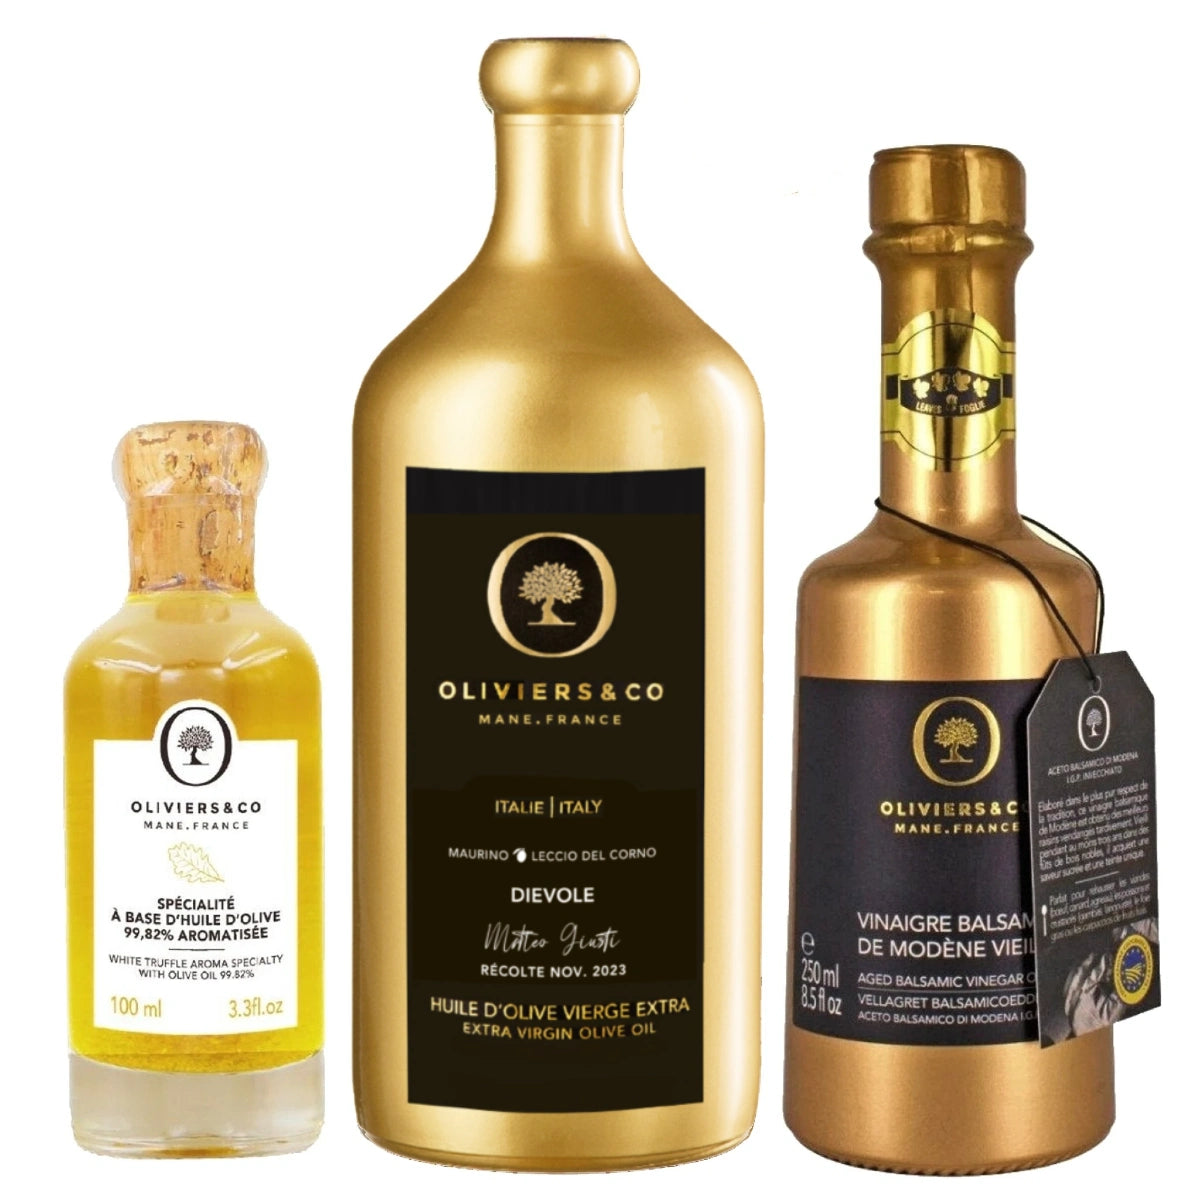 Luksus gourmet sæt med italiensk ekstra jomfru olivenolie, guldbalsamico og hvid trøffelolie fra Oliviers & Co